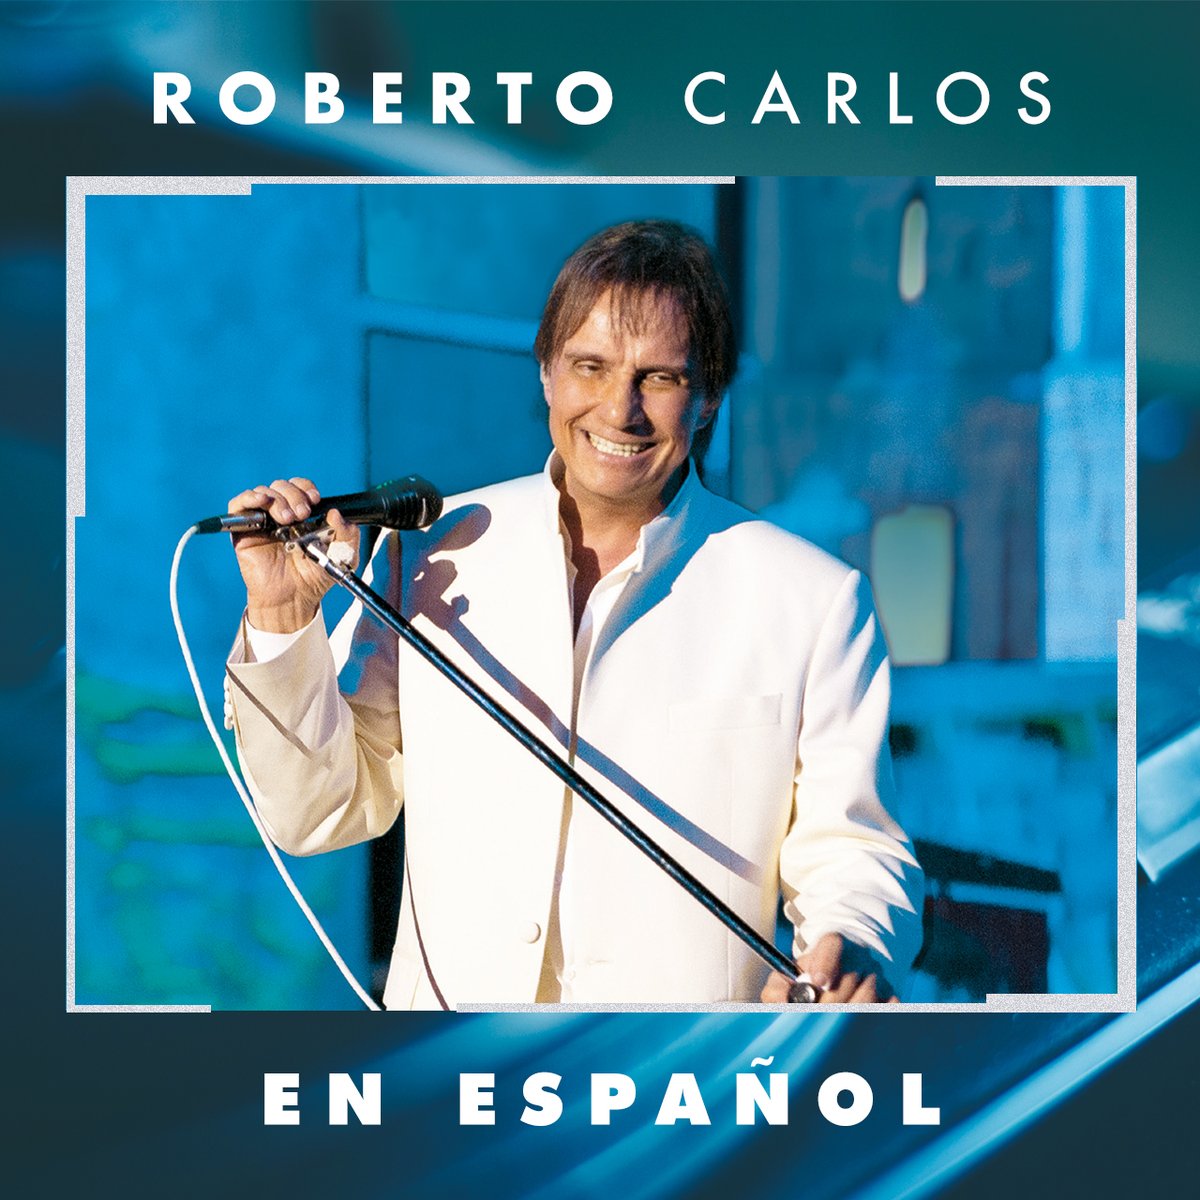 Todos los grandes exitos en español los puedes escuchar aqui 👉 bit.ly/RC_EnEspanol
#RCenEspañol #RCSpotify